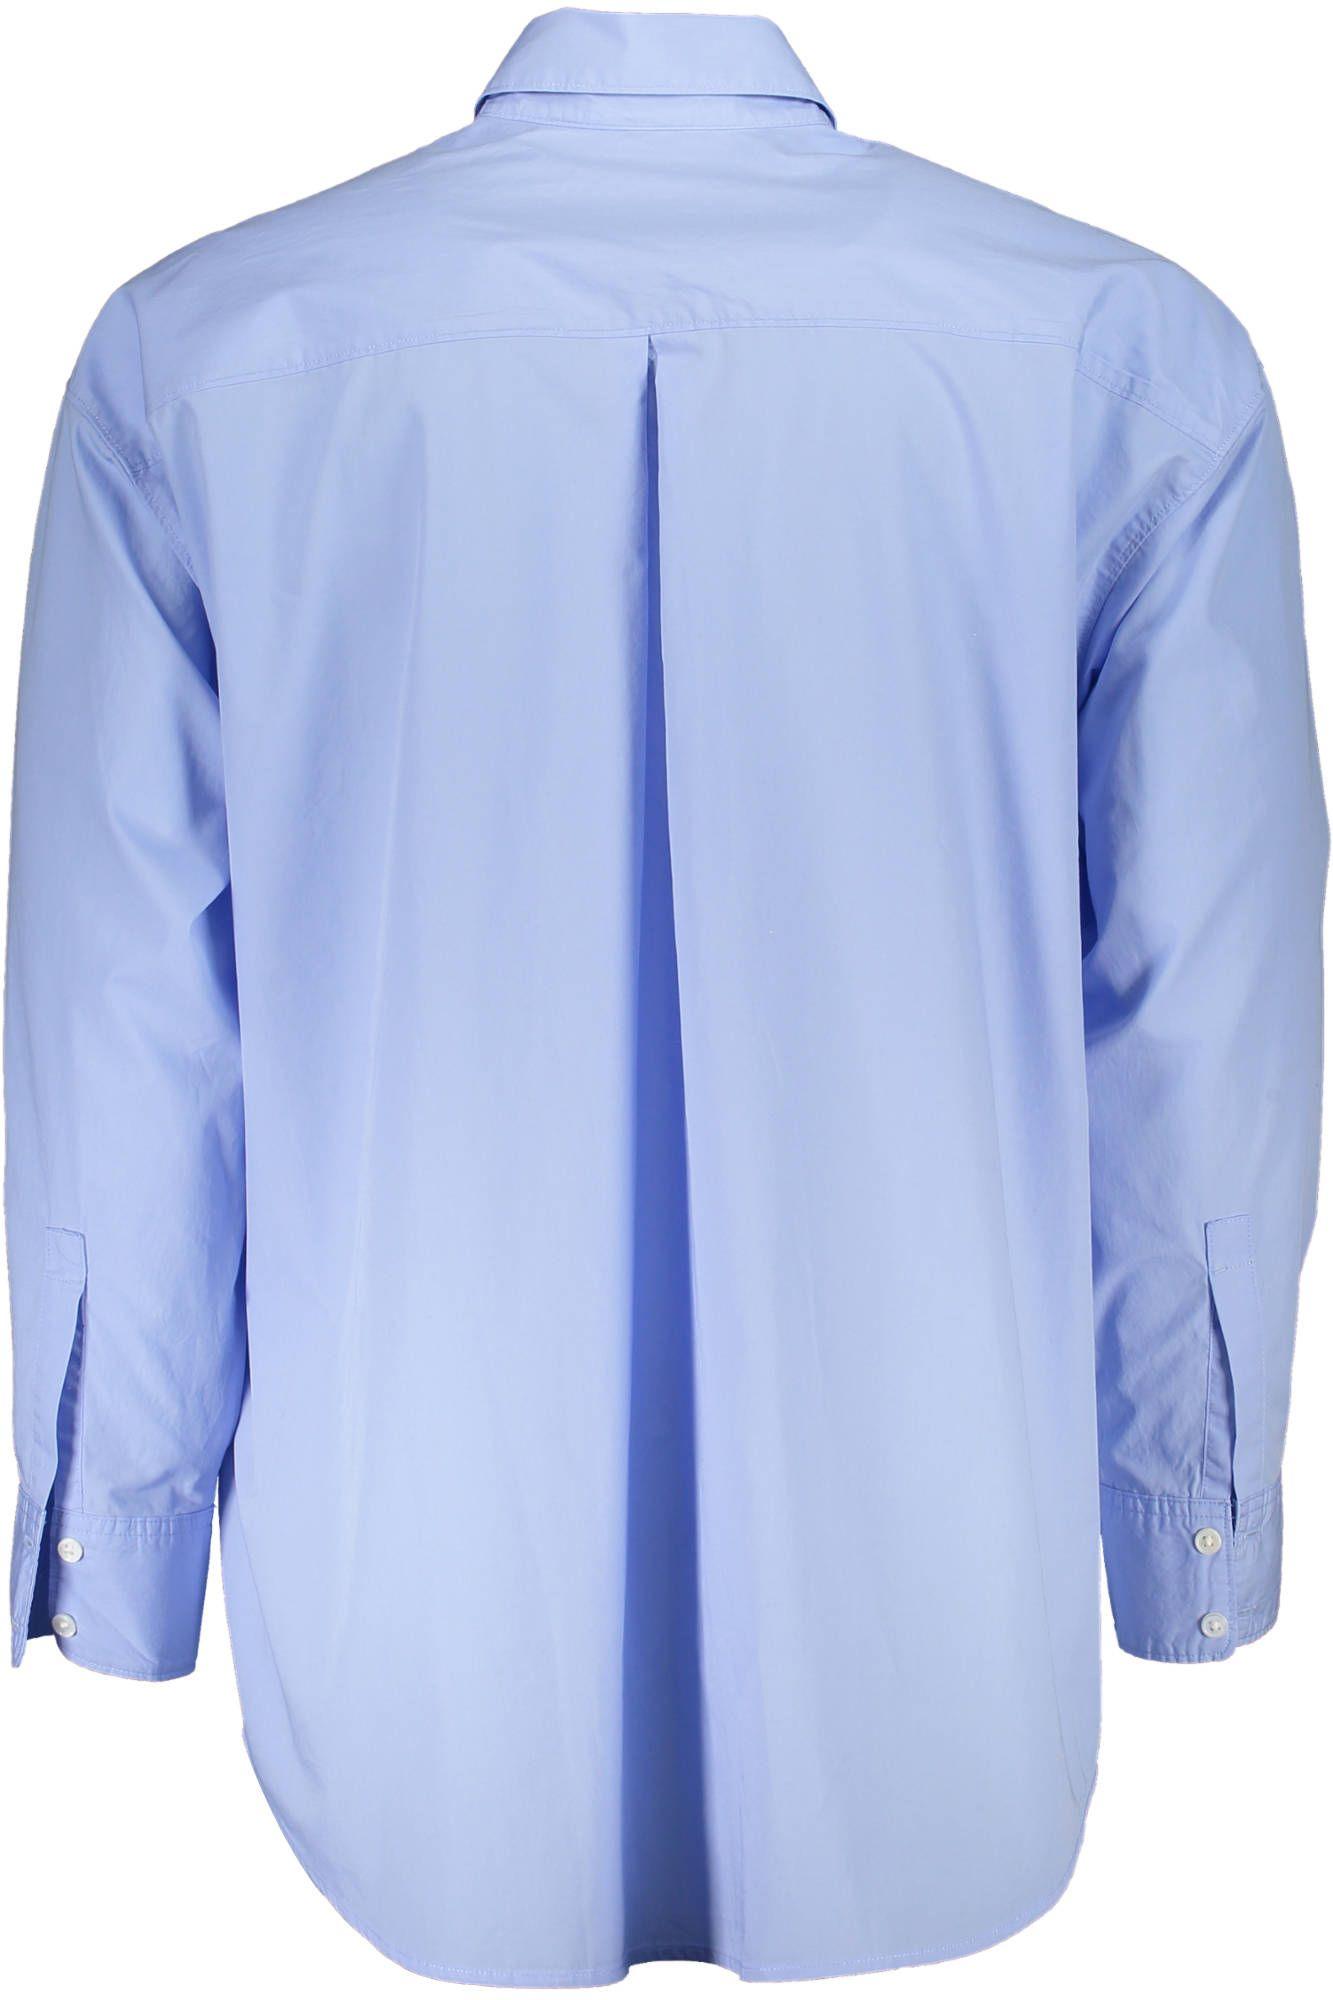 Elegant Light Blue Long-Sleeved Shirt - Divitiae Glamour